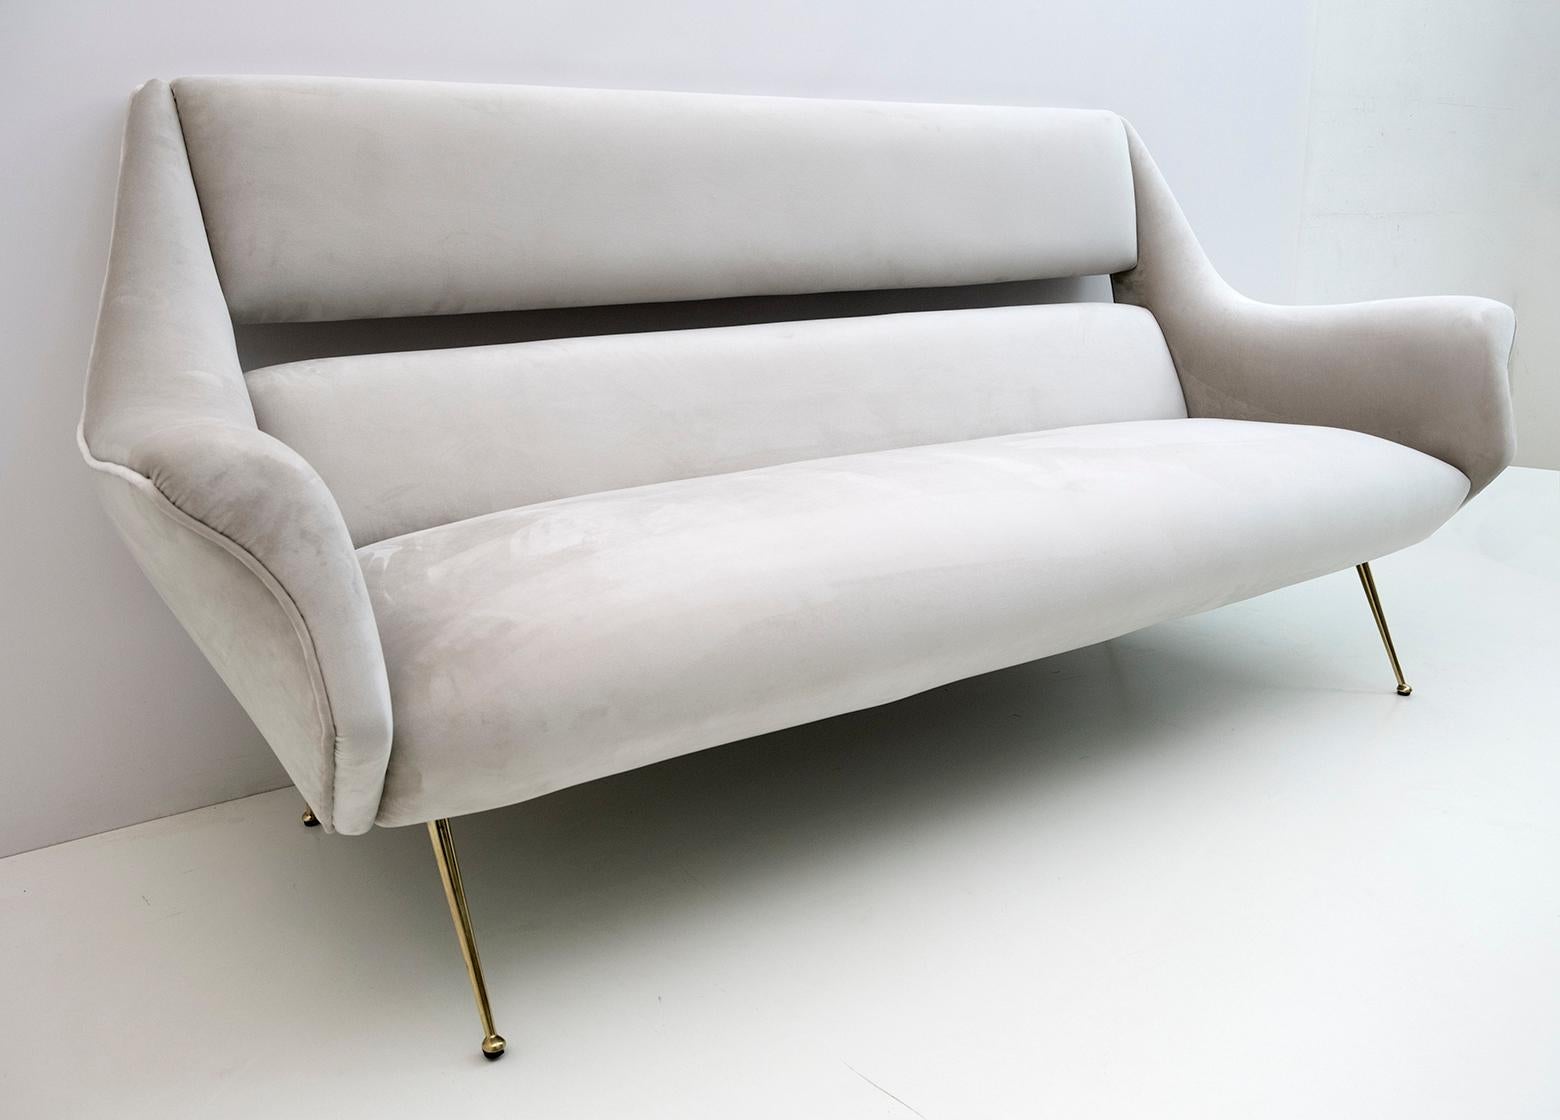 Mid-20th Century Gigi Radice Mid-Century Modern Italian Velvet Sofa for Minotti, 1950s For Sale